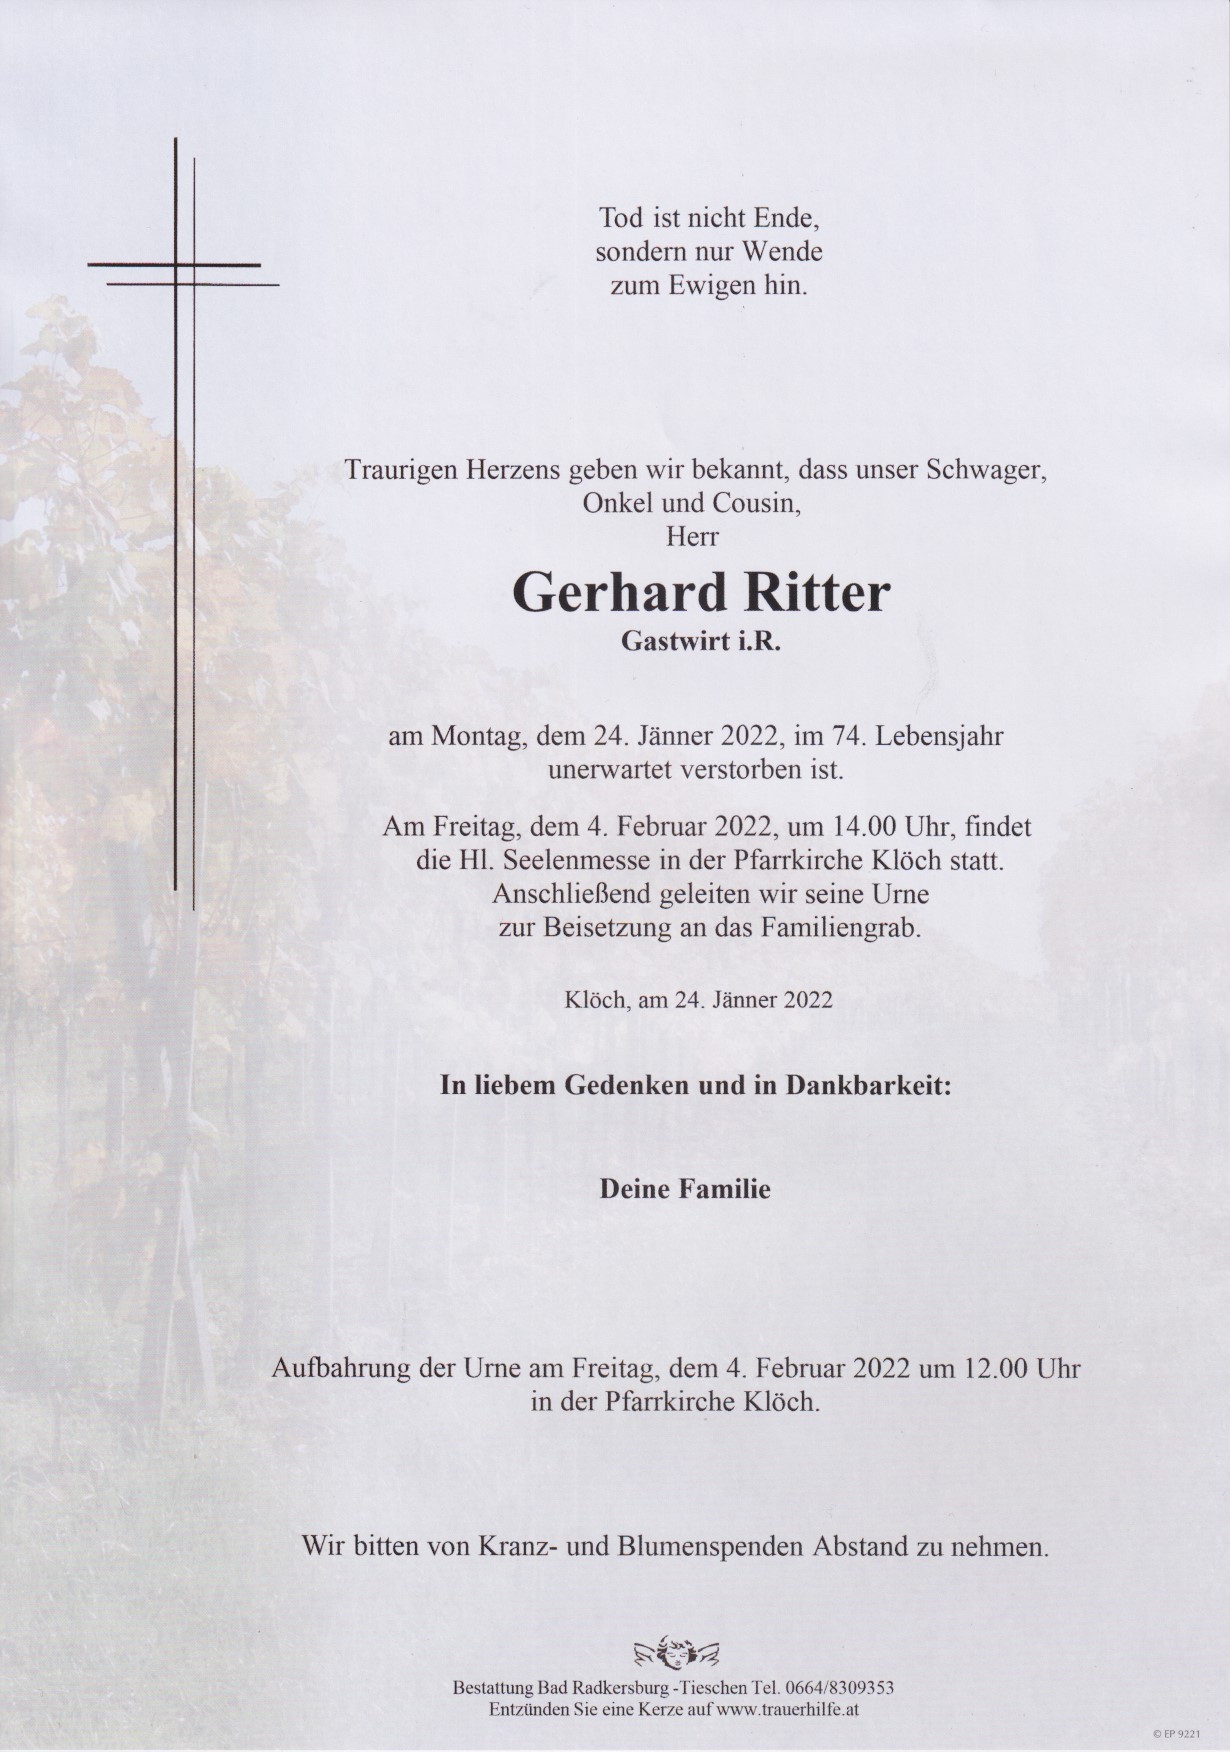 Gerhard Ritter